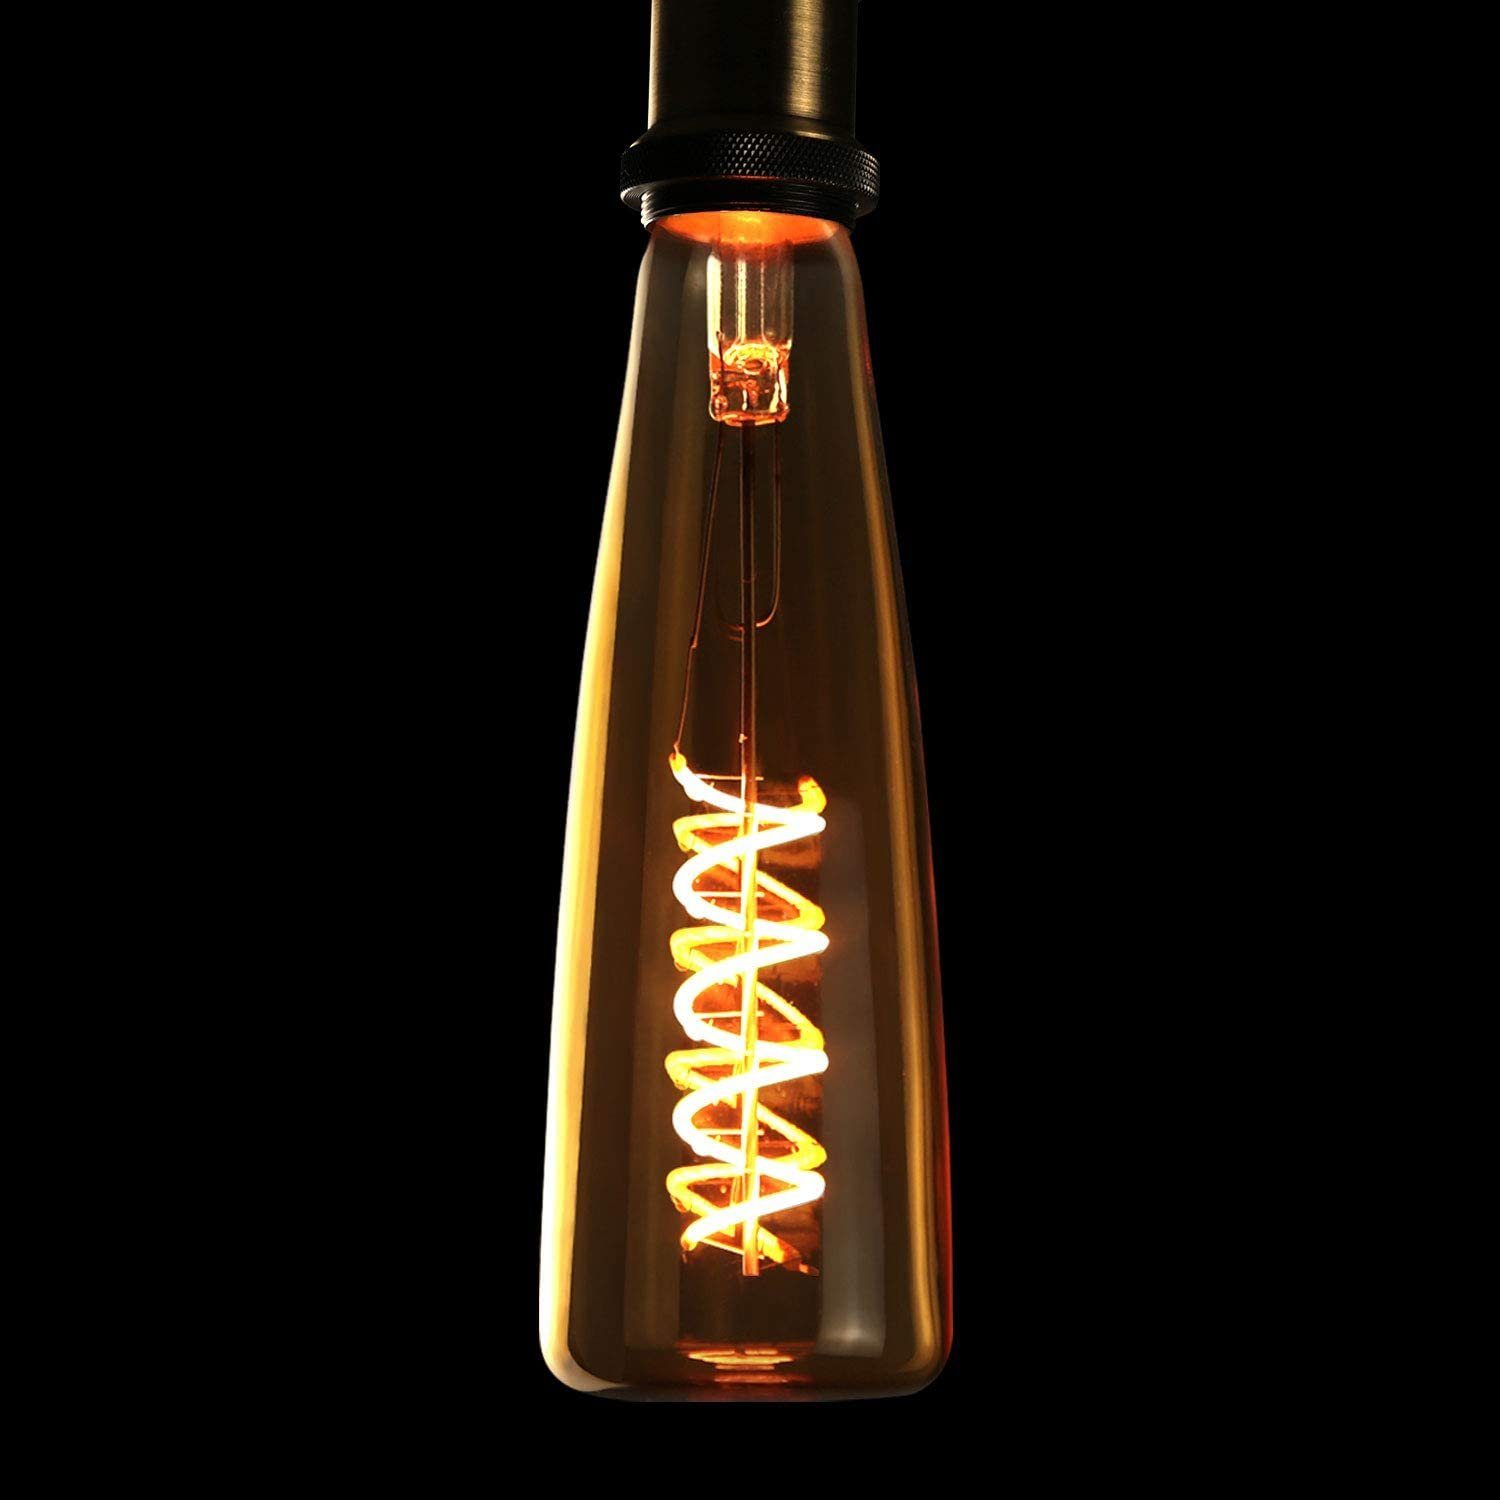 ZMH LED Glühbirne E27 Retro Edison Glühlampe 4W in Weinflasche Form - 2200K  Warmweiß - Goldfarbe - Dekorativ Spiralfilament Bulb für Nostalgie & Retro  Beleuchtung im Haus Café Restaurant LED-Leuchtmittel